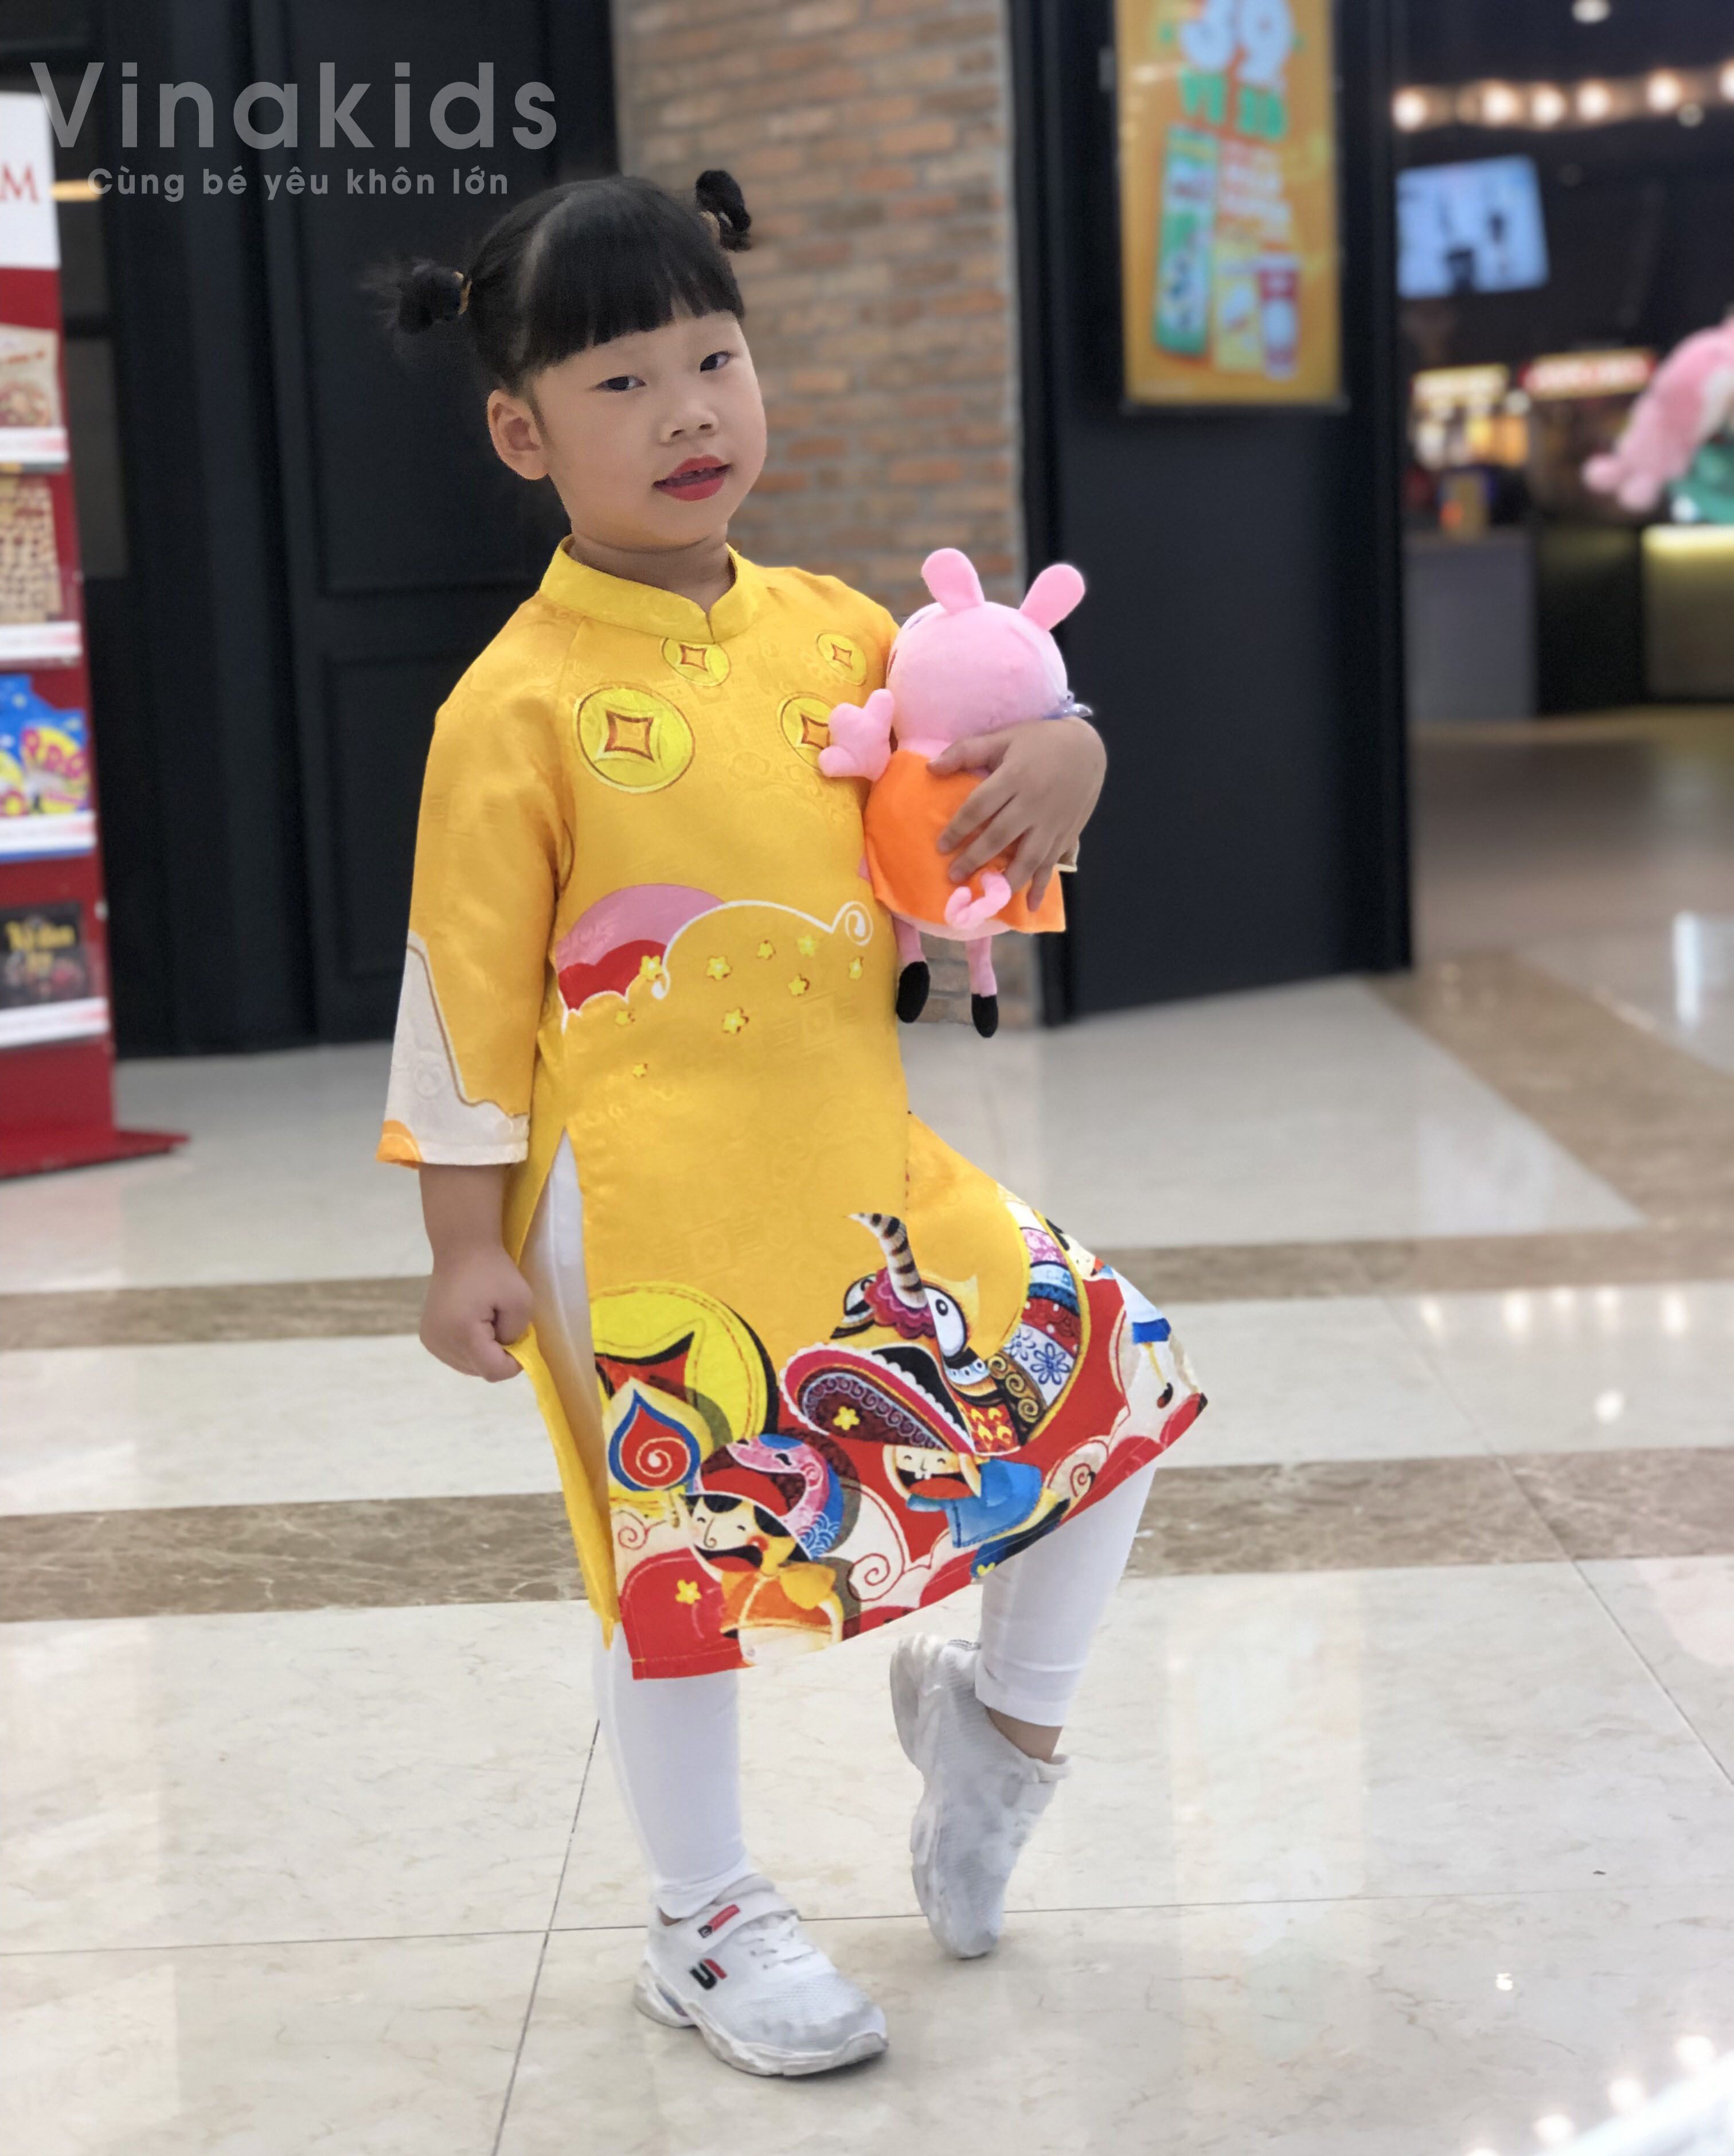 Bộ sưu tập áo dài cách tân cho bé gái của Vinakids với họa tiết tết màu vàng rực rỡ sẽ khiến cho bé yêu của bạn trông thật đáng yêu và quyến rũ. Hãy cùng ngắm nhìn bộ sưu tập này và khám phá vẻ đẹp truyền thống Việt Nam được nâng lên một tầm cao mới.